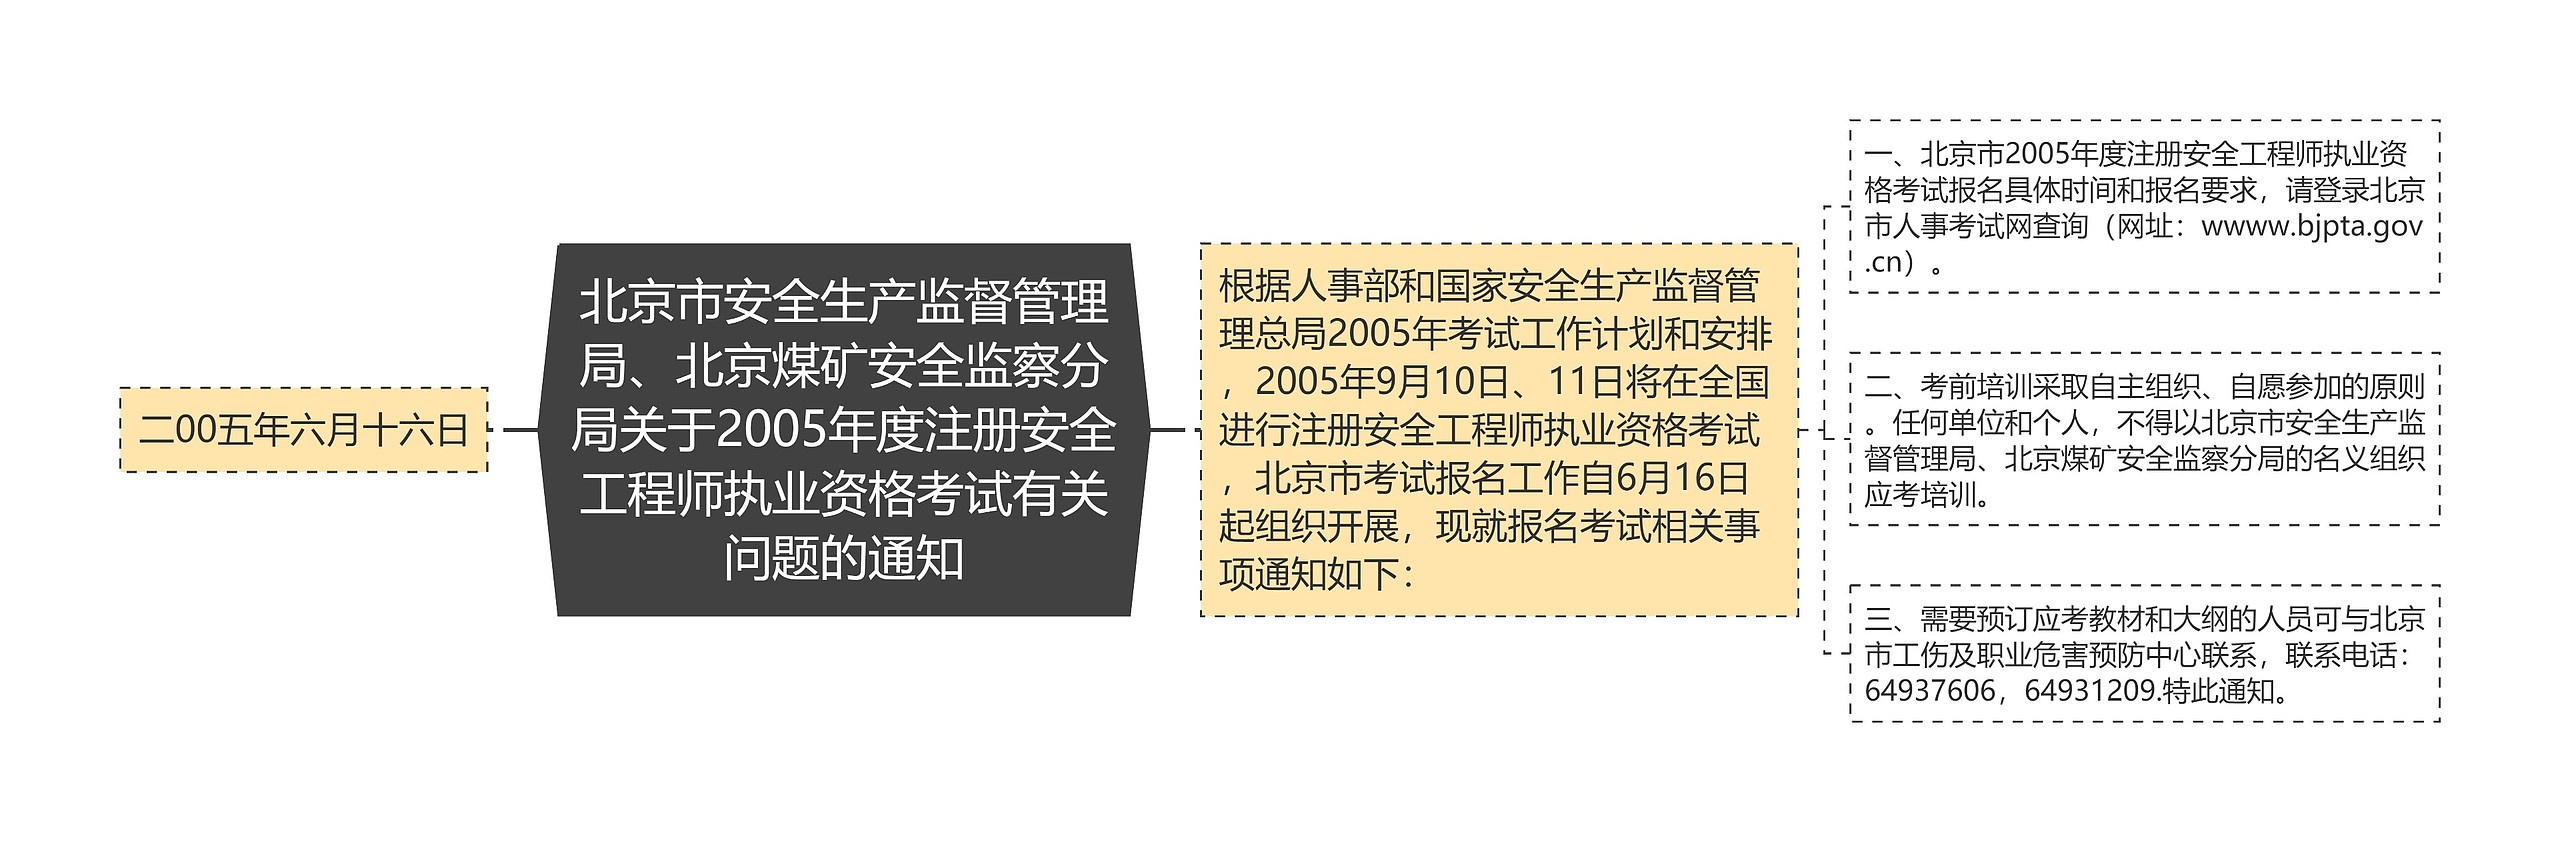 北京市安全生产监督管理局、北京煤矿安全监察分局关于2005年度注册安全工程师执业资格考试有关问题的通知